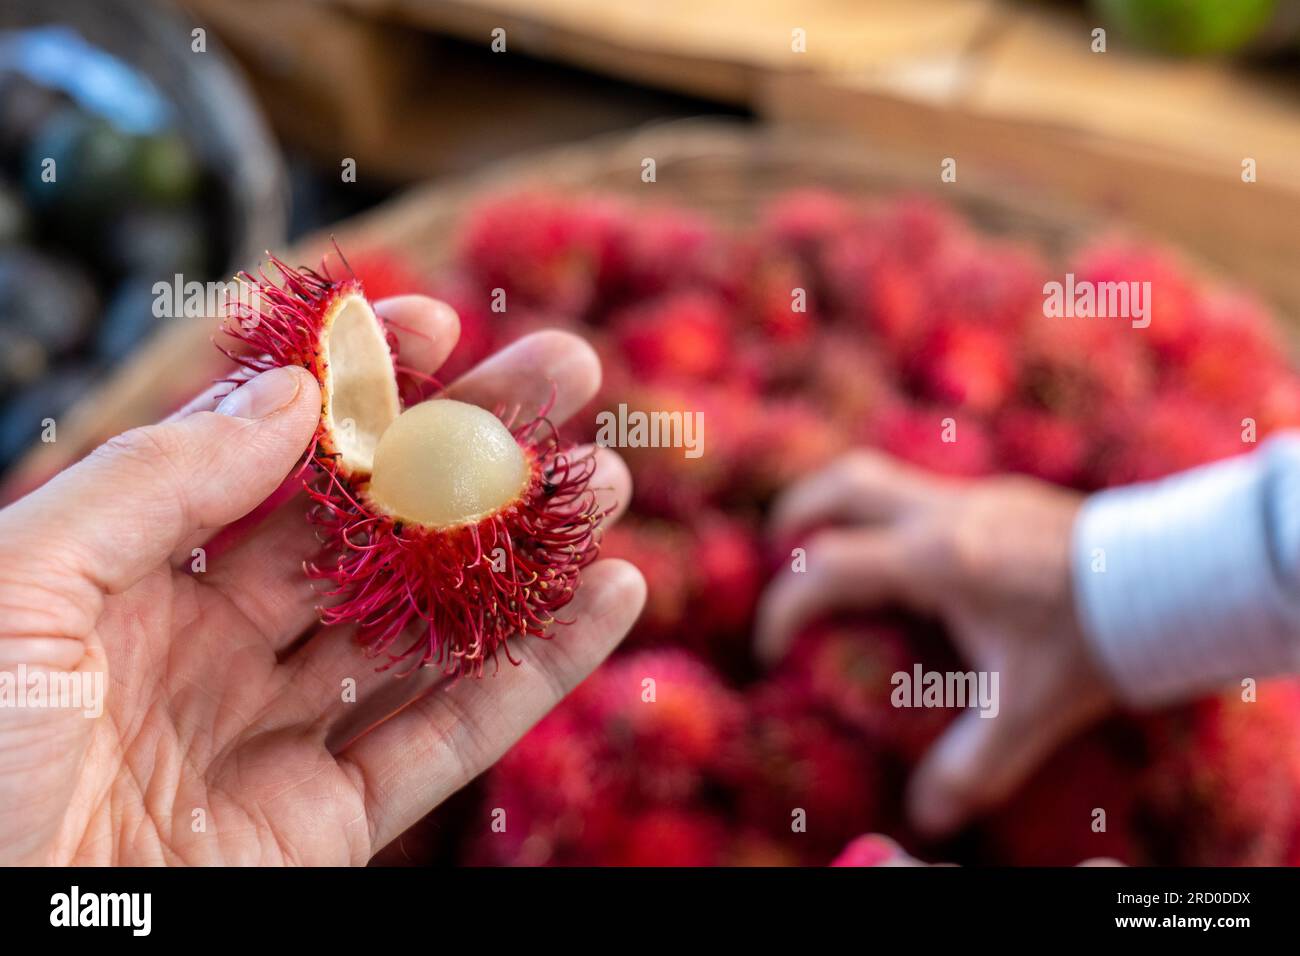 Nahaufnahme einer Hand, die einen geöffneten reifen Rambutan (Nephelium lappaceum), Eine Frucht, die von Südostasien stammt, in einem Stall in The Color hält Stockfoto